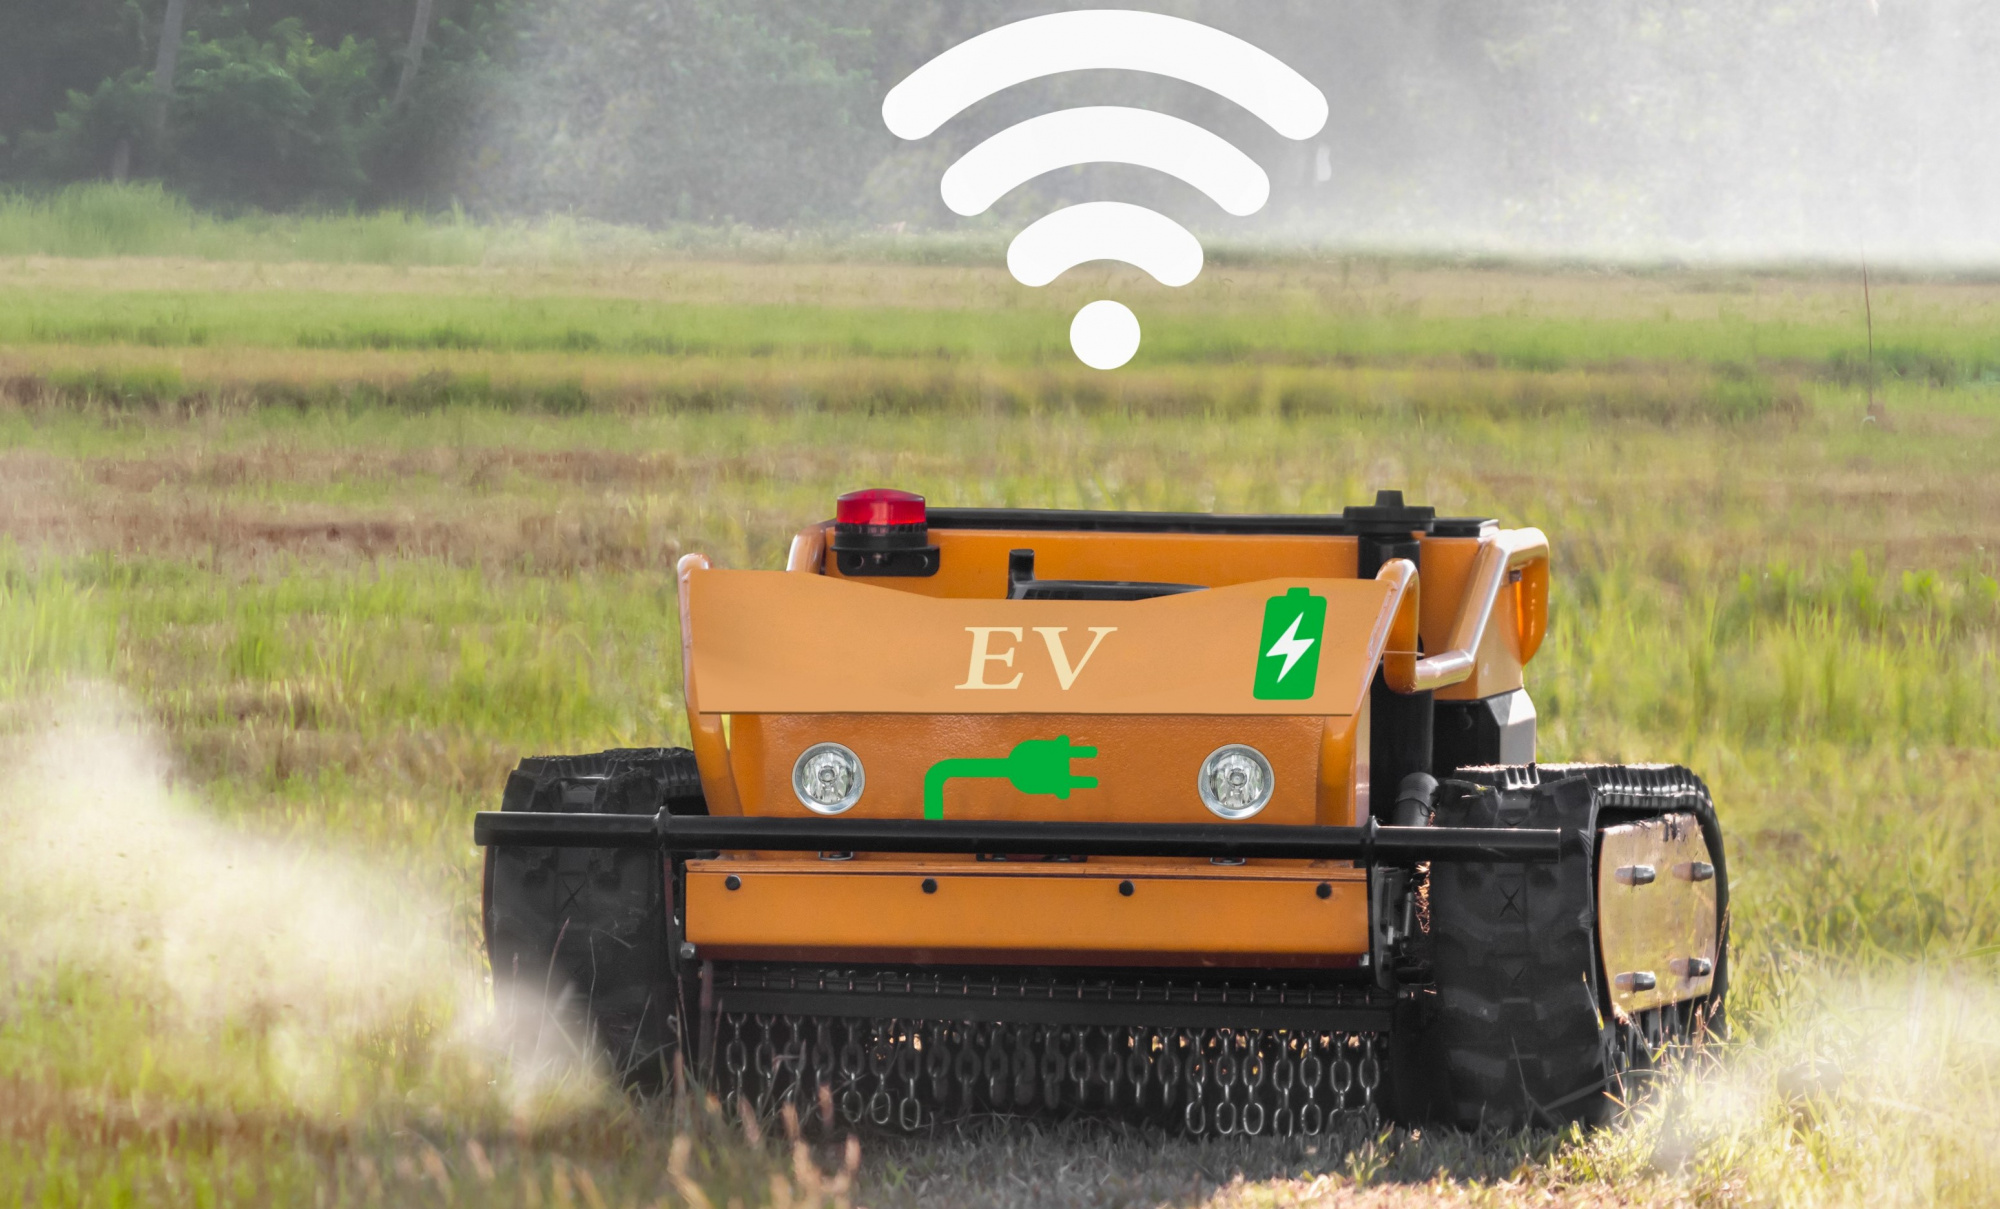 autonomous agriculutre machine